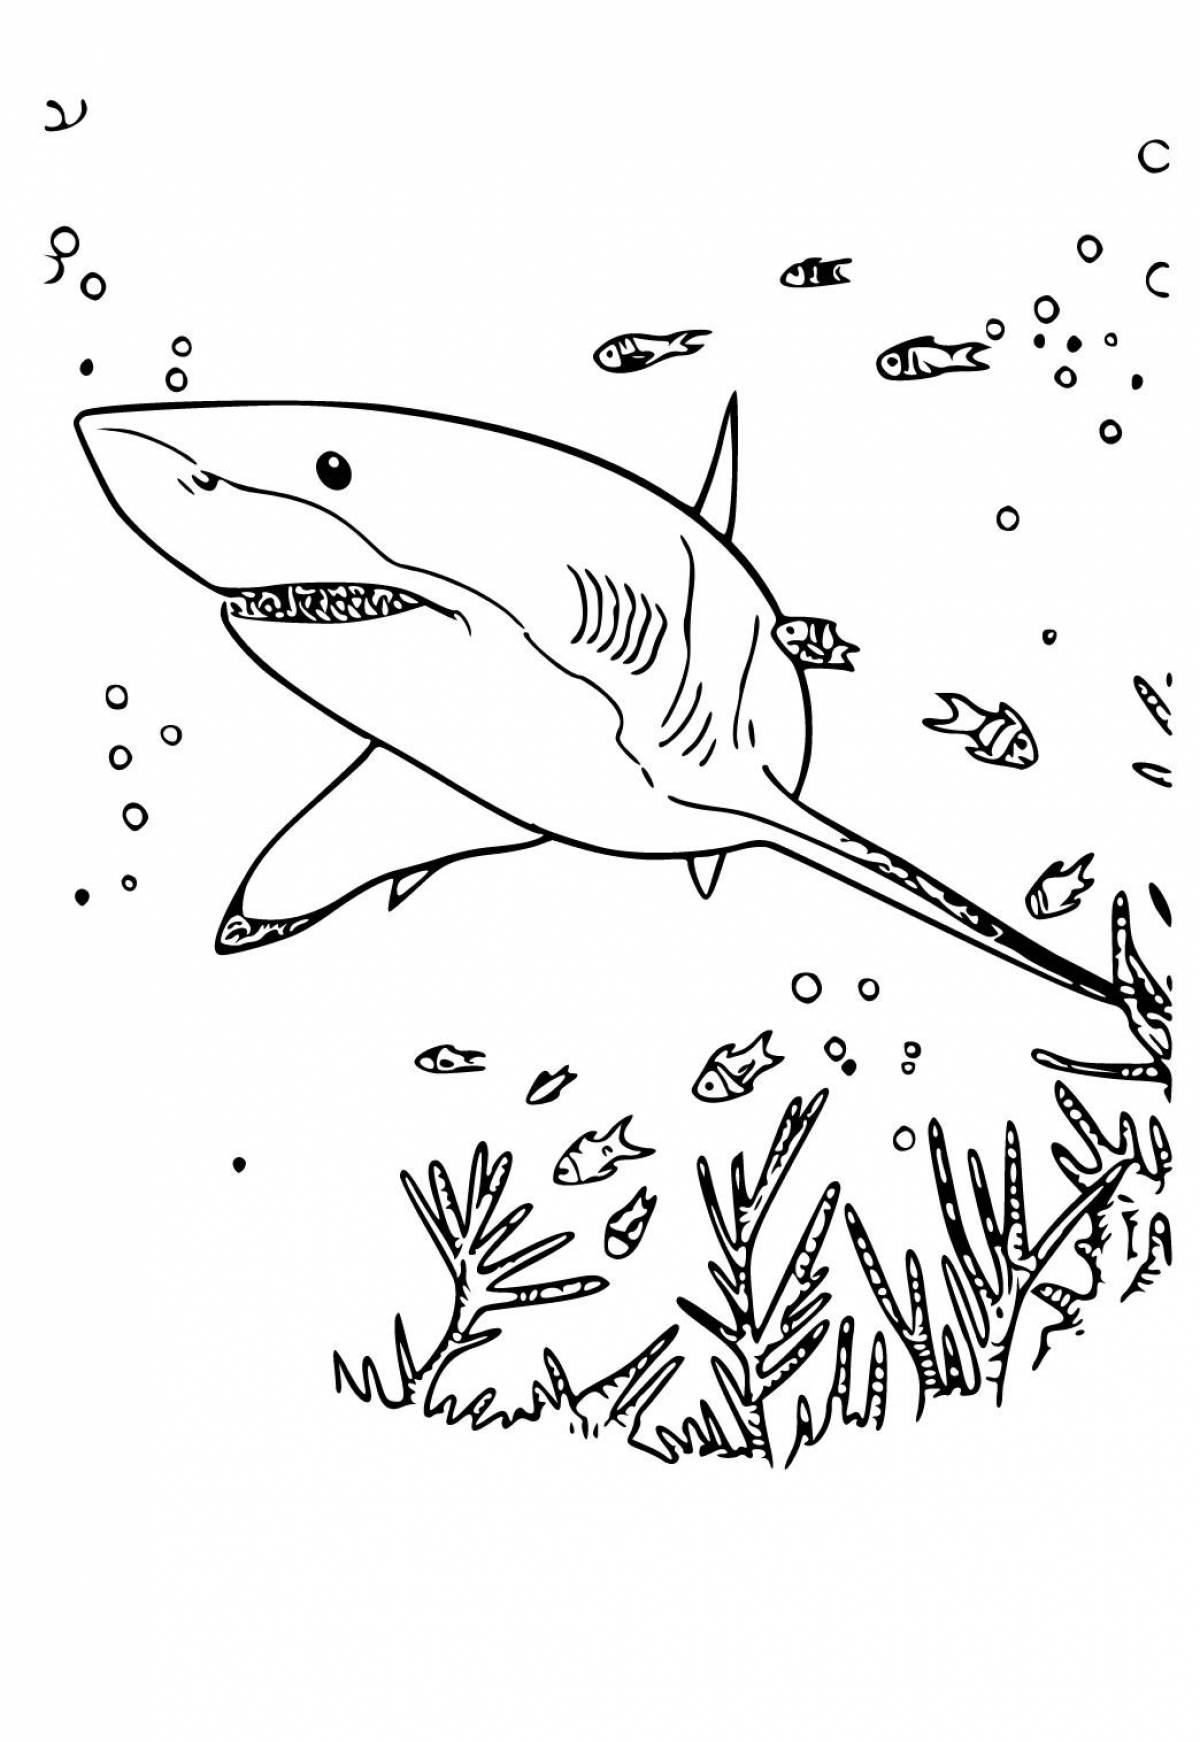 Привлекательная раскраска акулы для детей